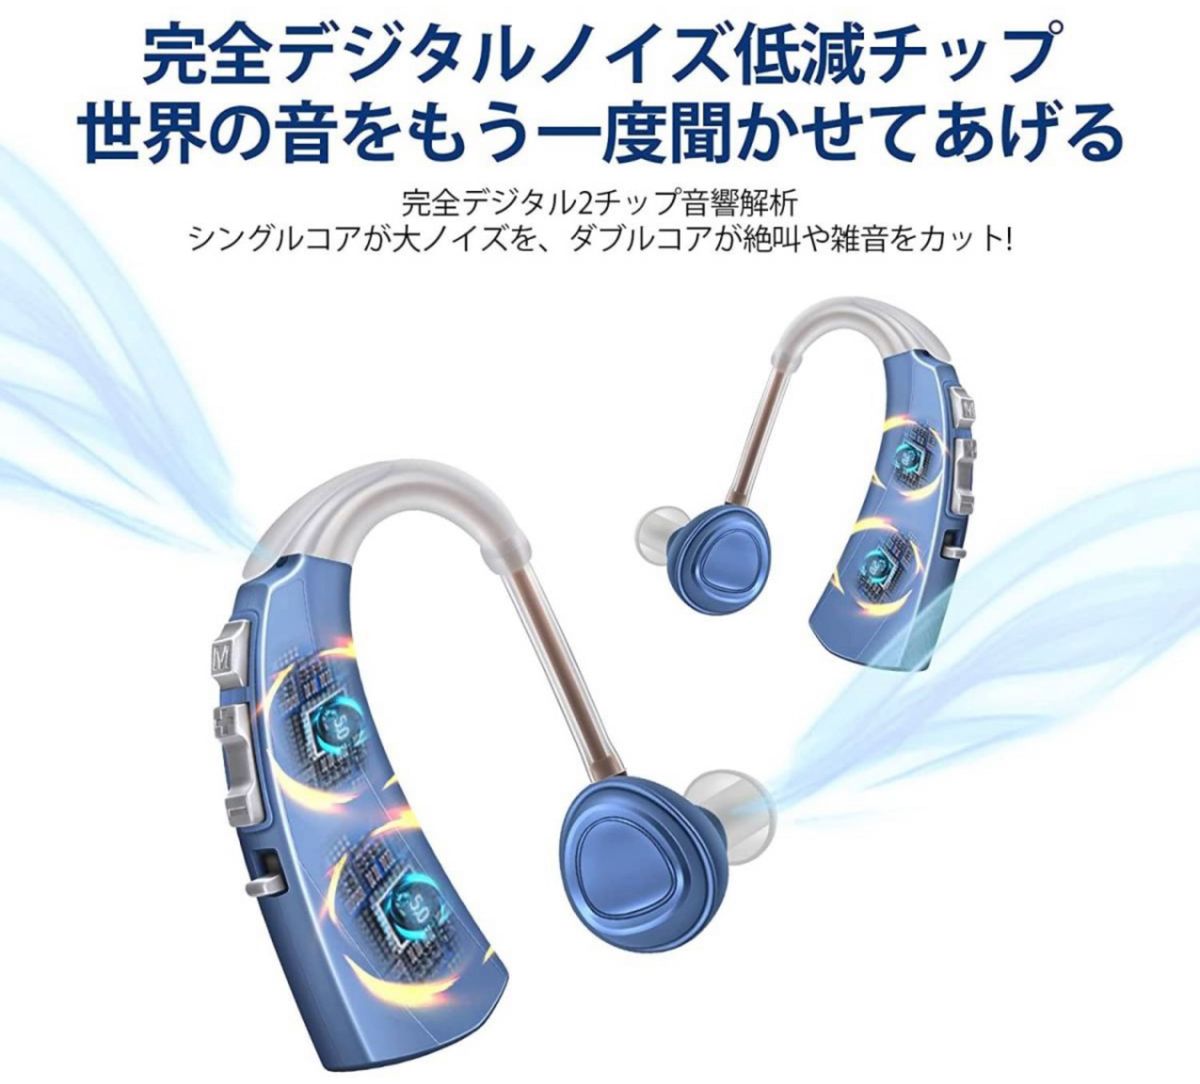 集音器 デジタル集音器 ノイズリダクション 耳掛け 4モード シニア向け 音質切替機能搭載 軽量 片耳用 日本語説明書付き